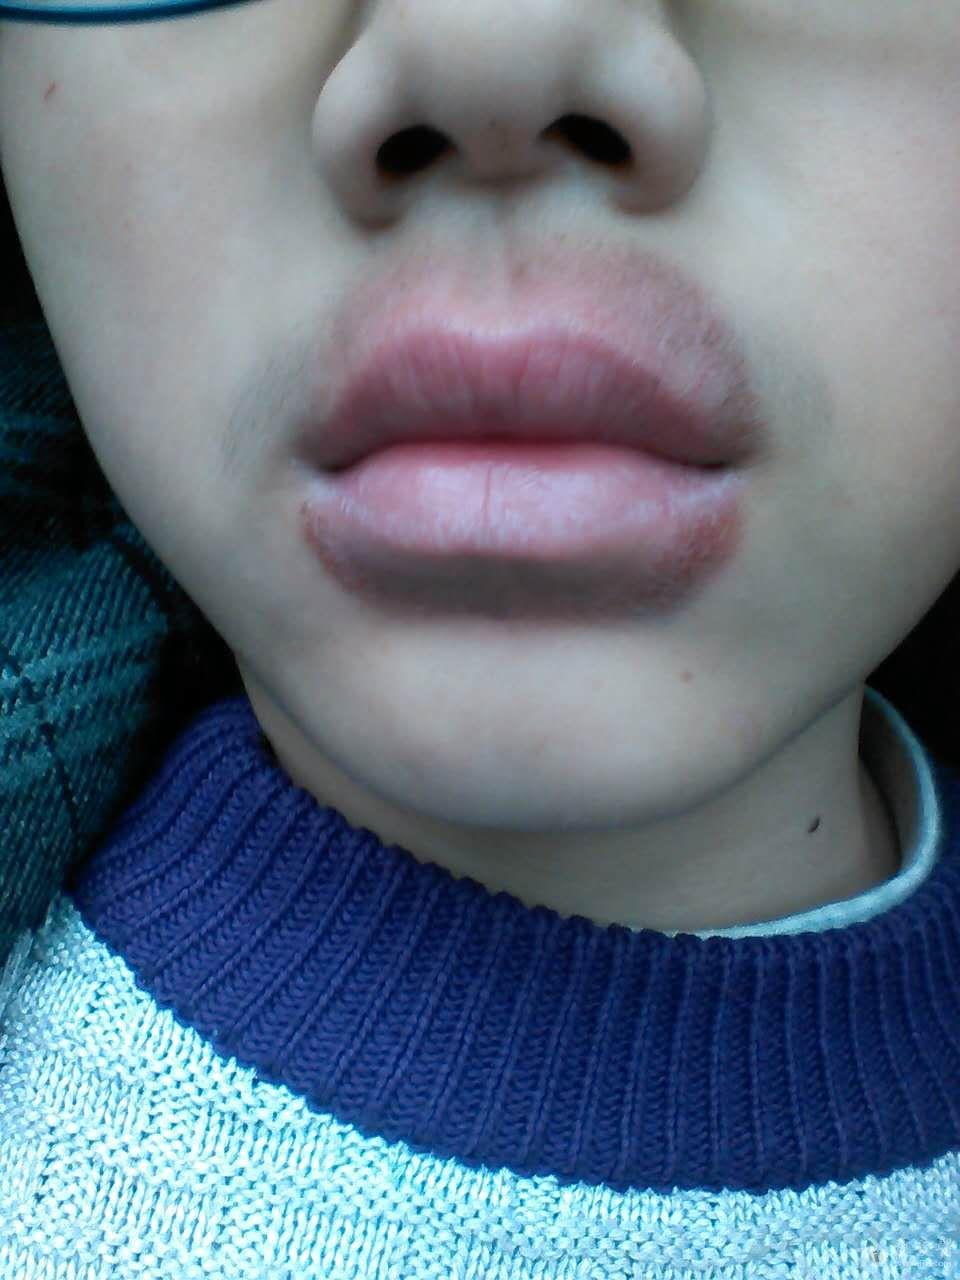 嘴唇周围一圈红色的斑疹,不痒,求助